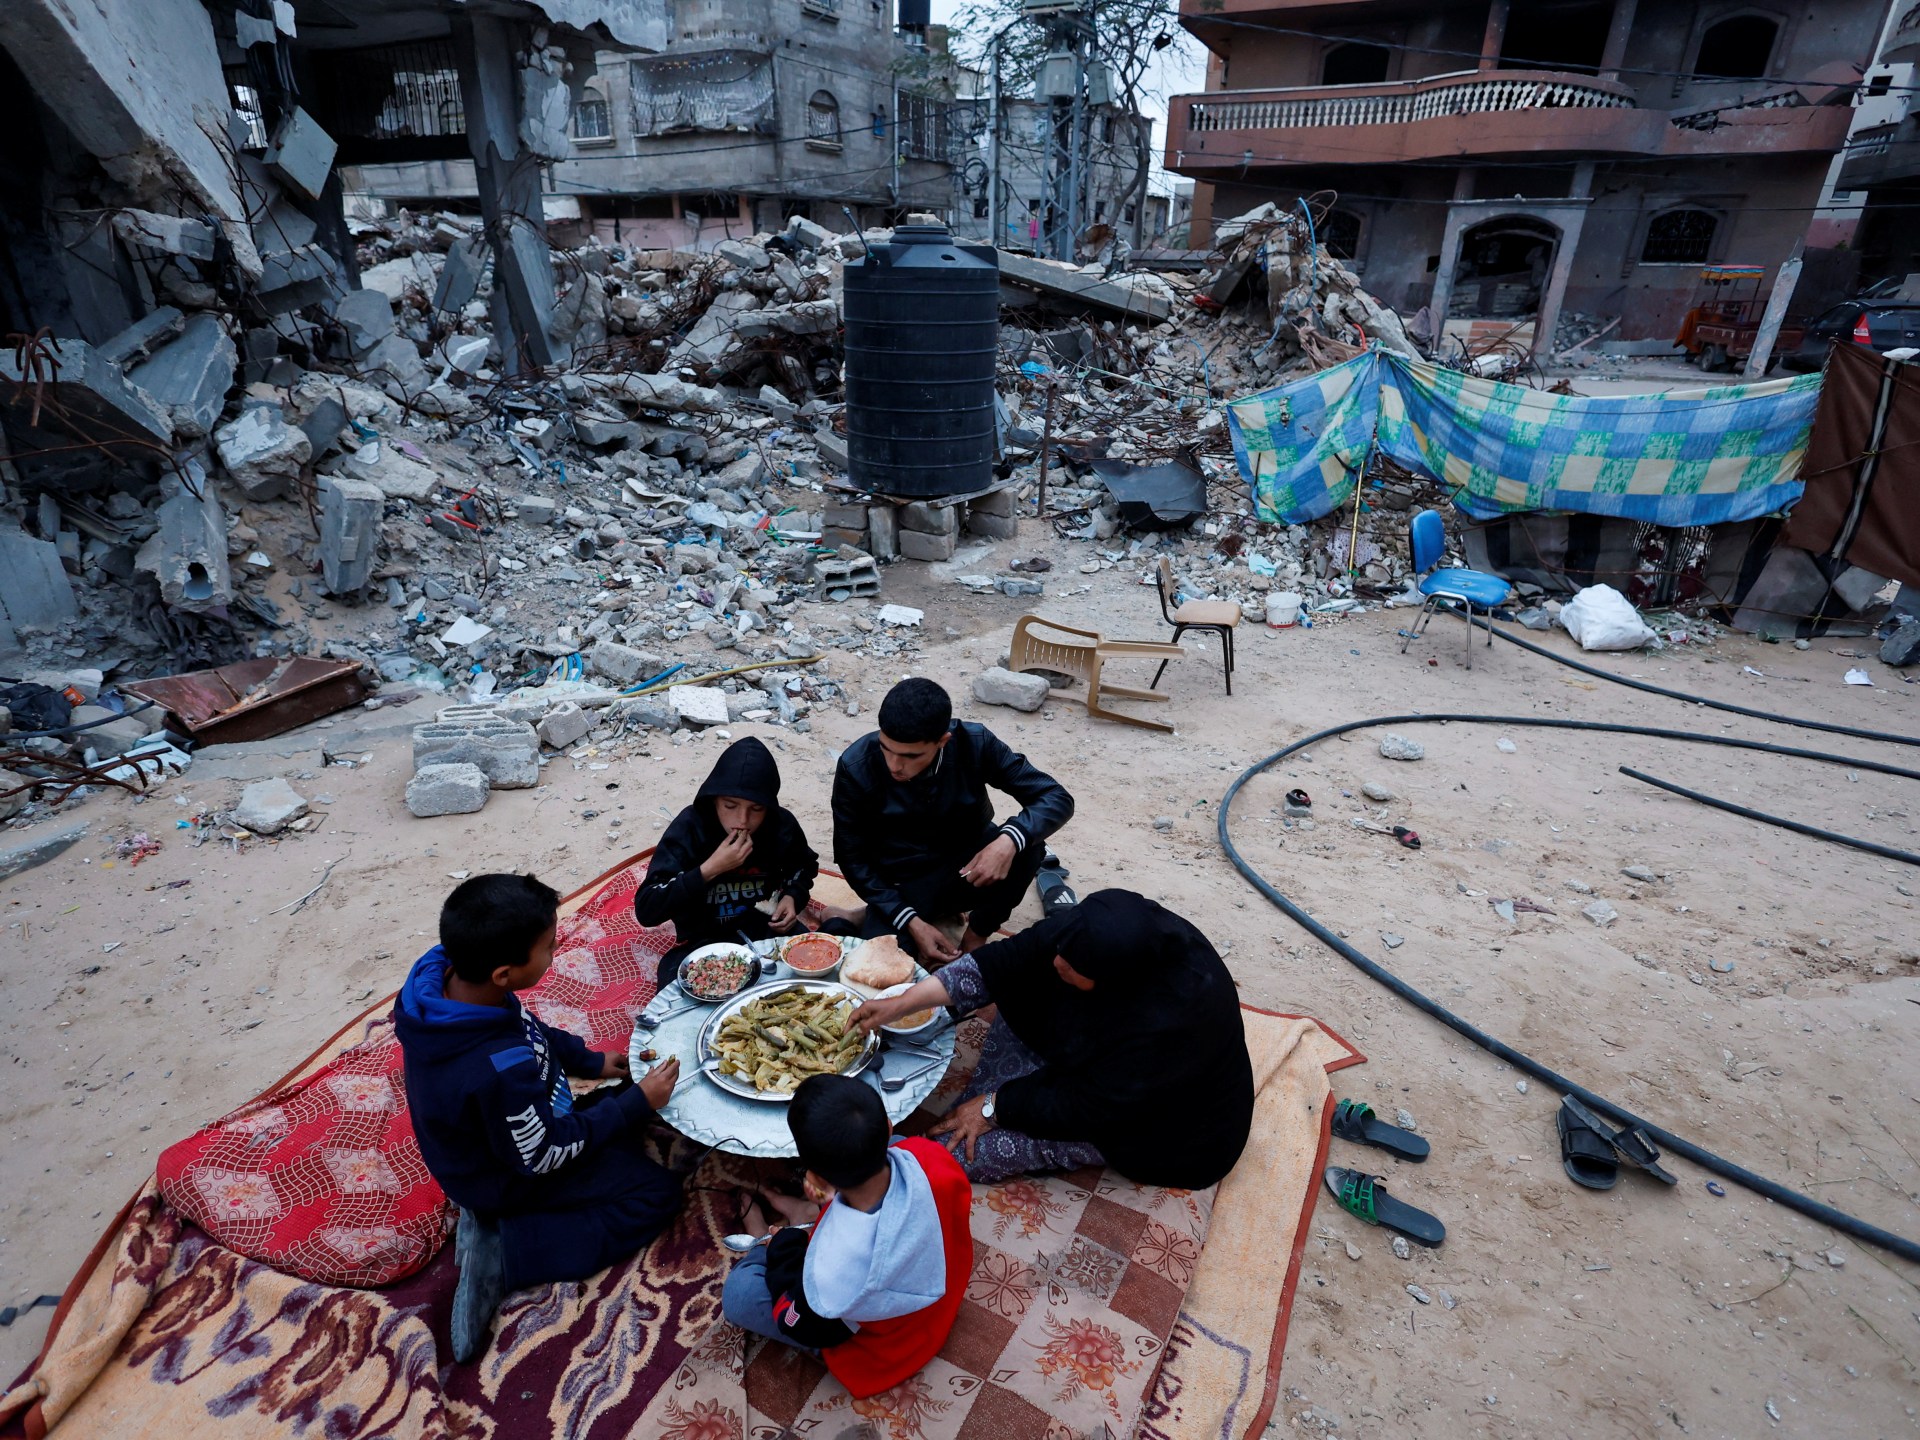 إيطاليا تستأنف تمويل الأونروا في الوقت الذي تواجه فيه غزة أزمة إنسانية |  أخبار الصراع الإسرائيلي الفلسطيني